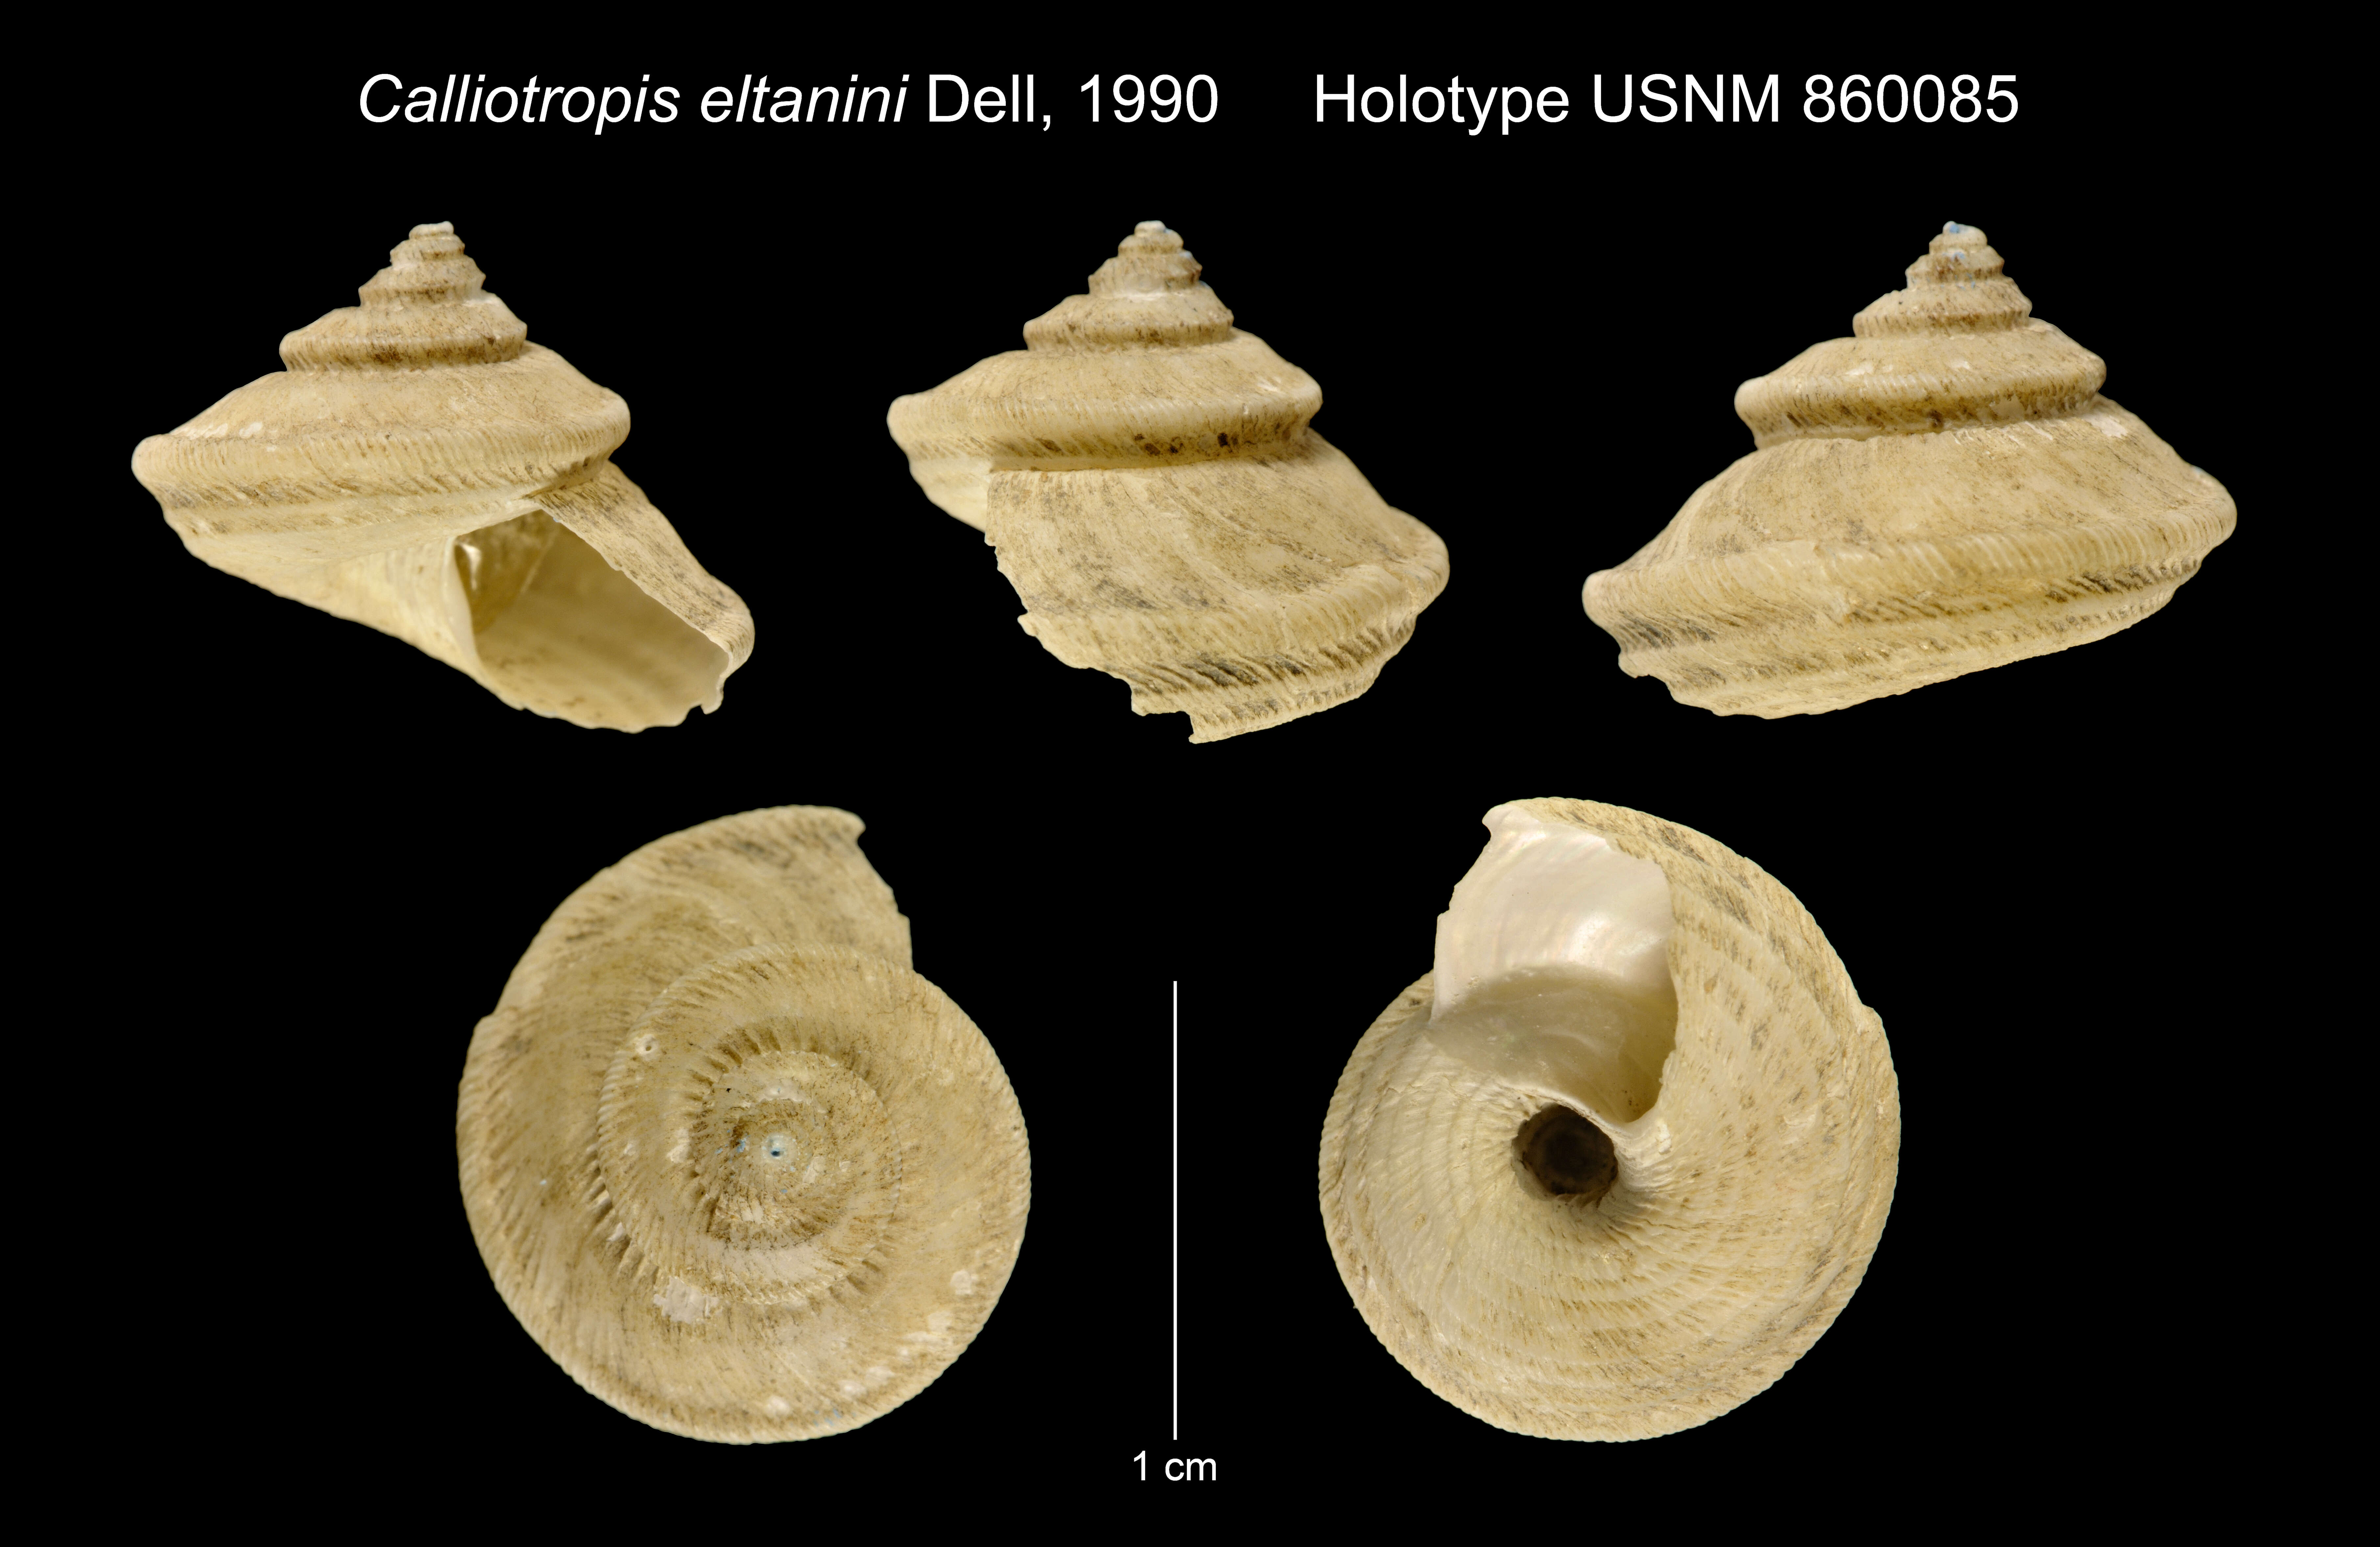 Image of Calliotropis eltanini Dell 1990